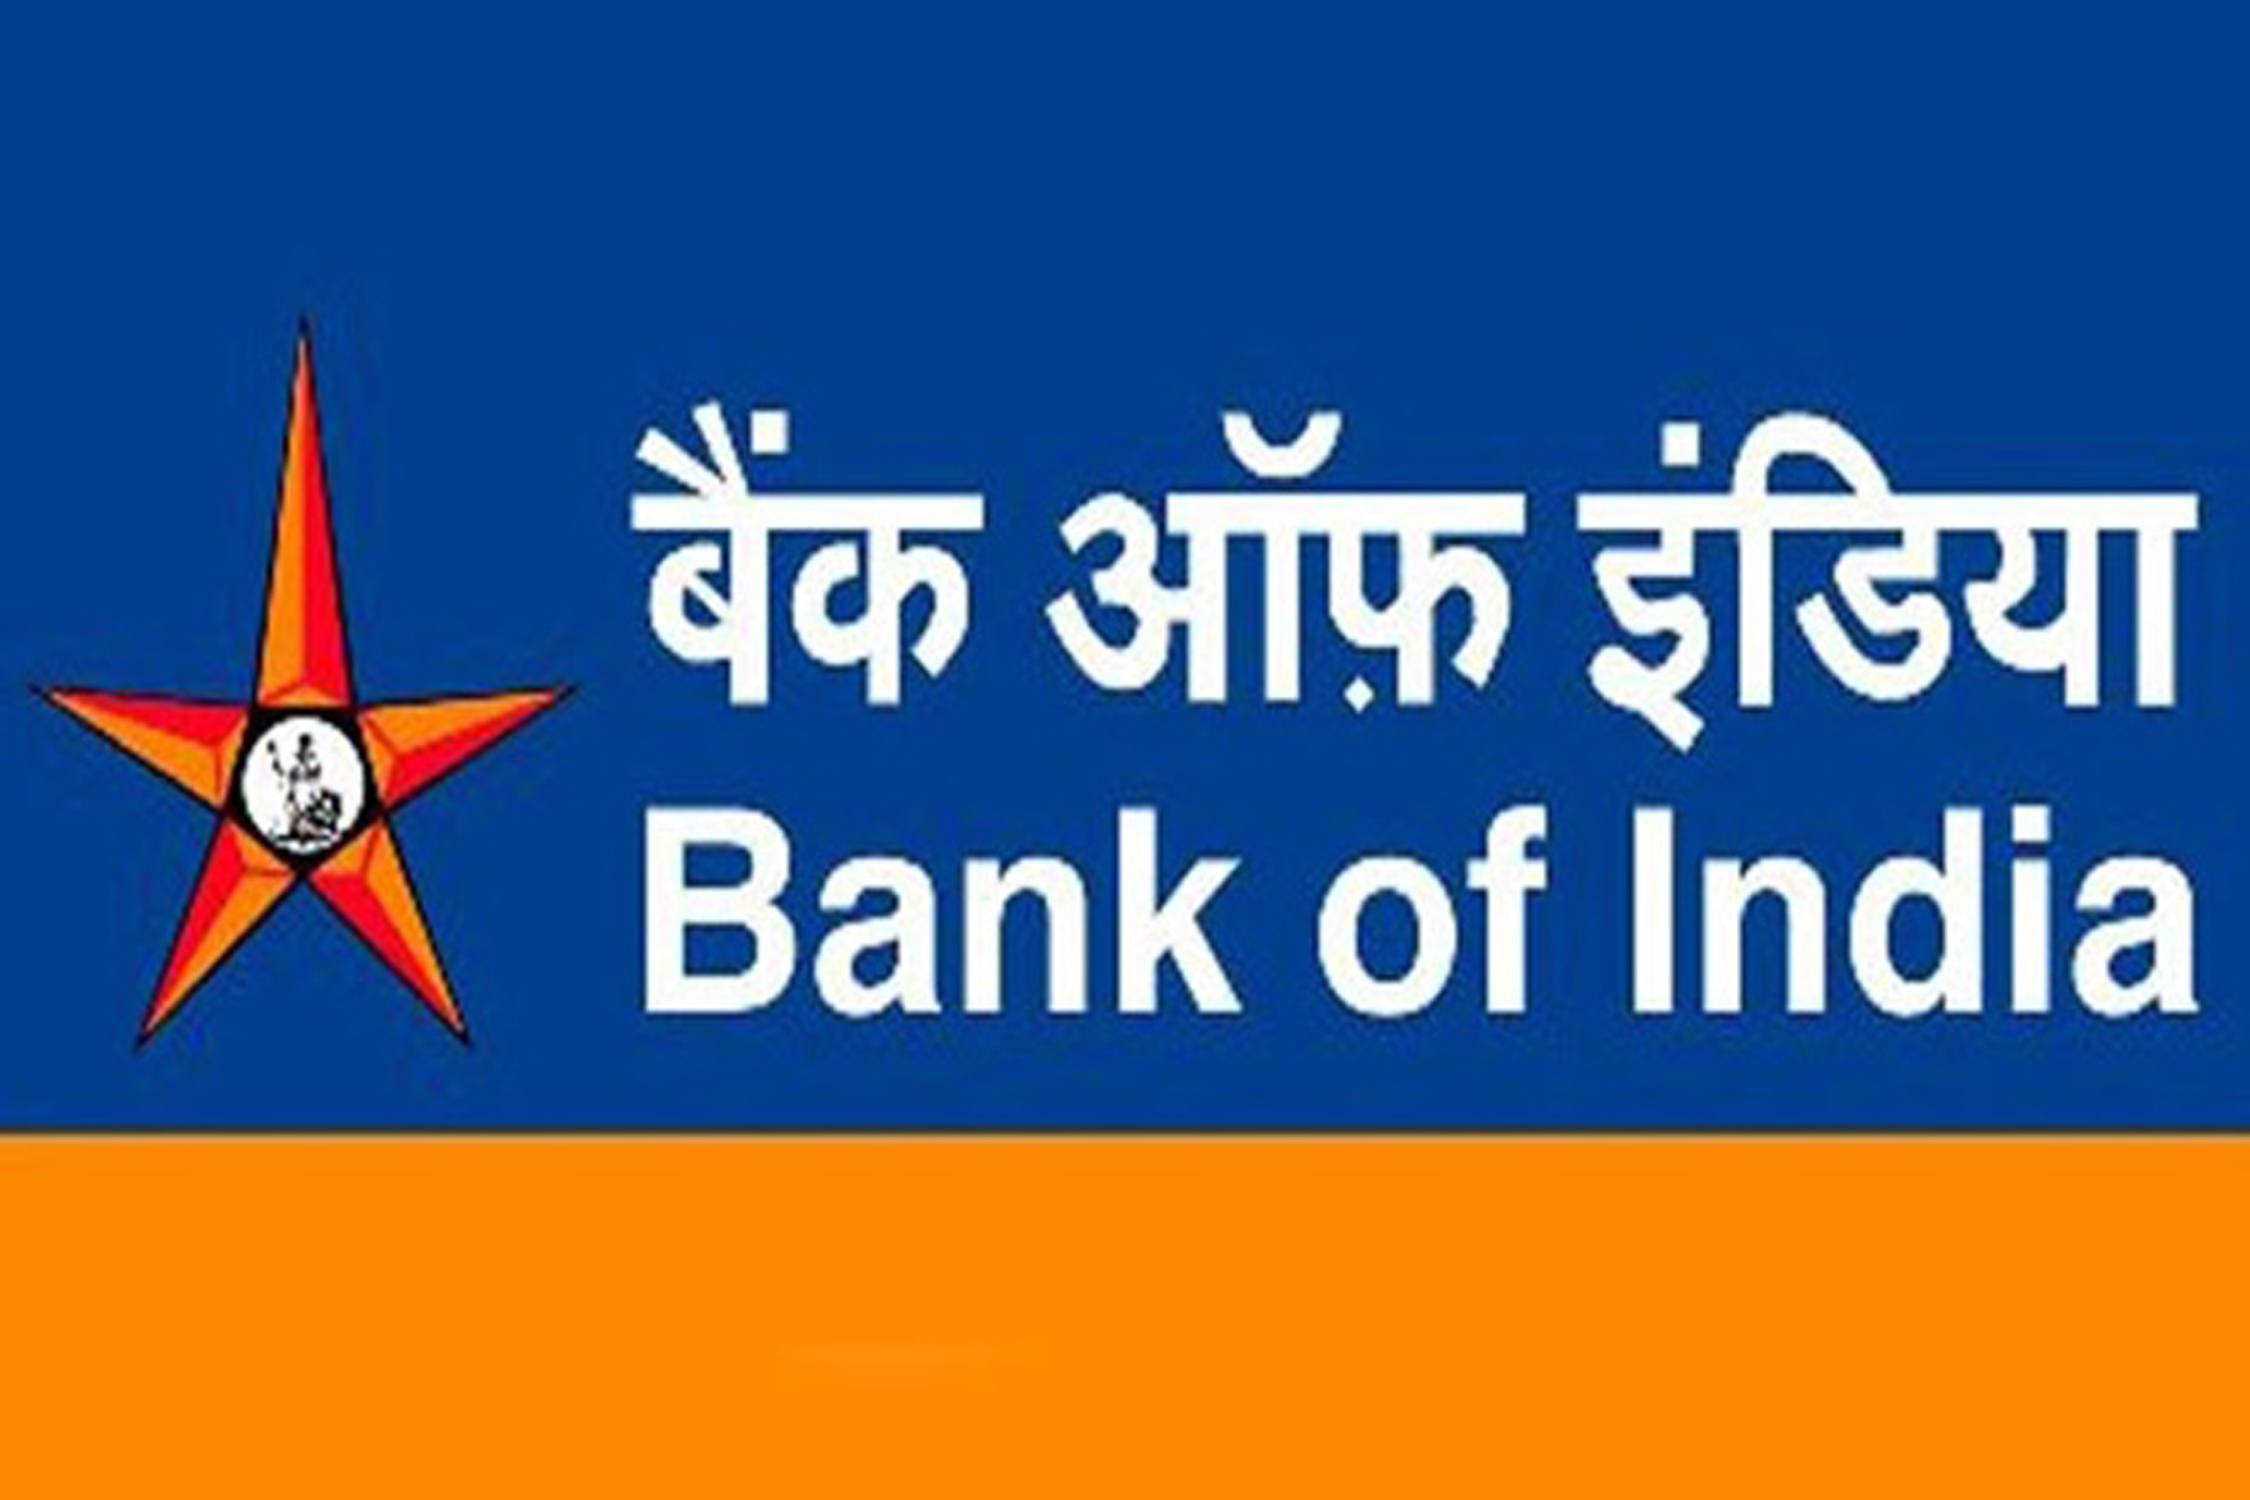 बैंक ऑफ इंडिया फ्रॉड केस: तीन पर कार्रवाई के बाद ८ और अफसर संदेह के घेरे में